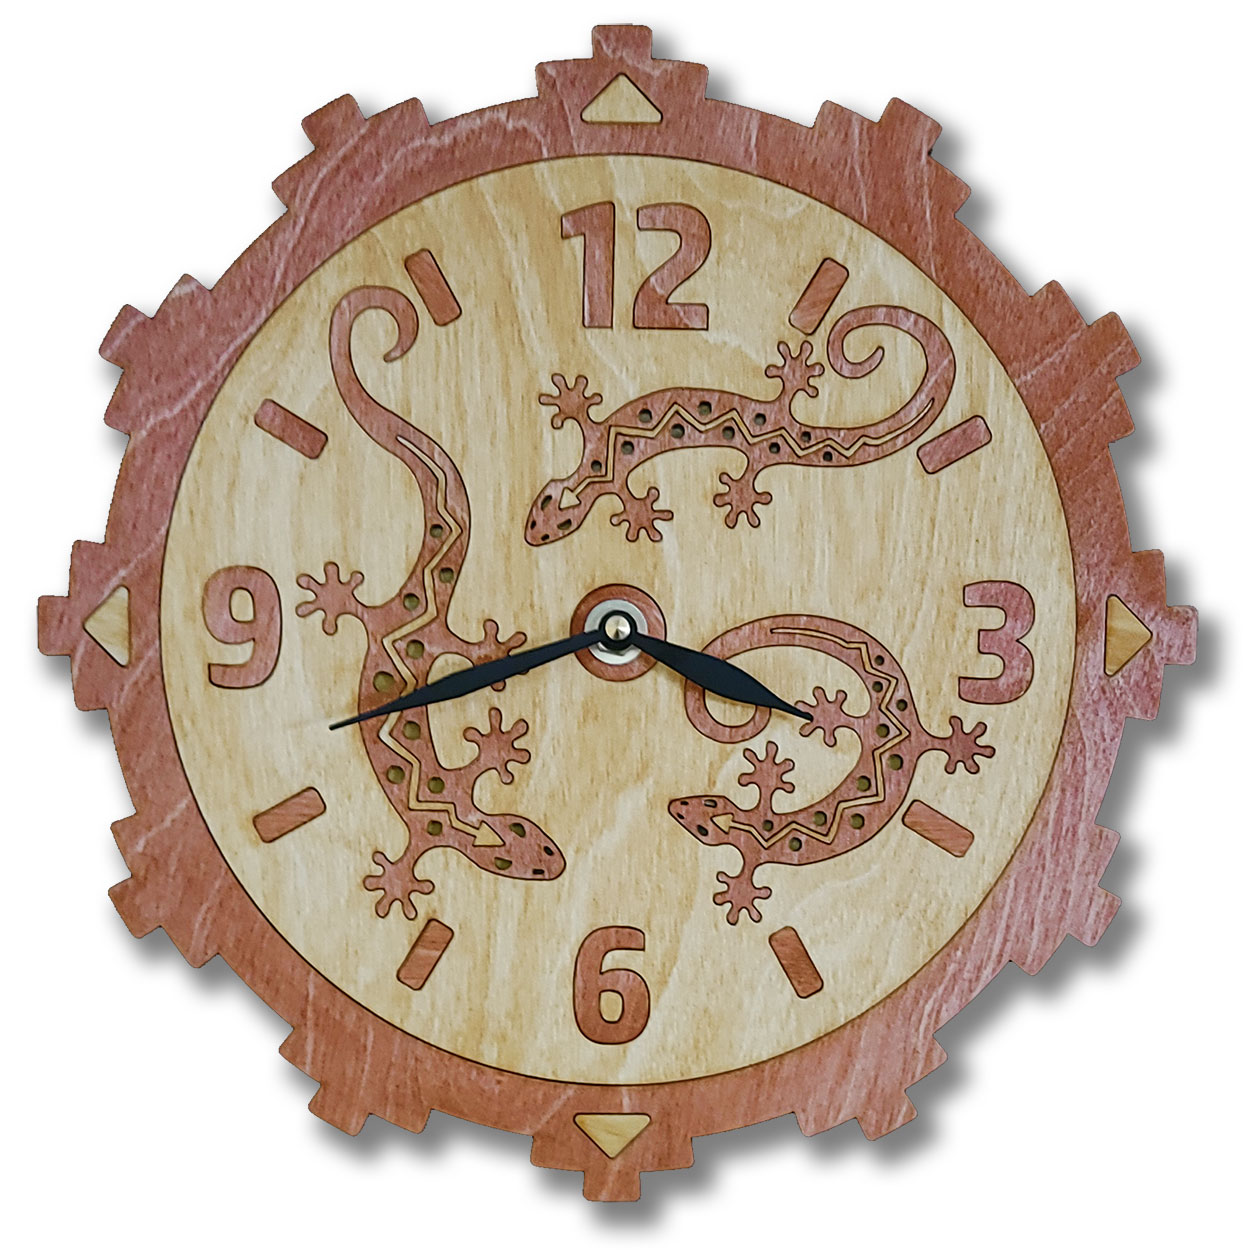 165743 - Lizards Cinnamon Wood Inlay Wall Clock